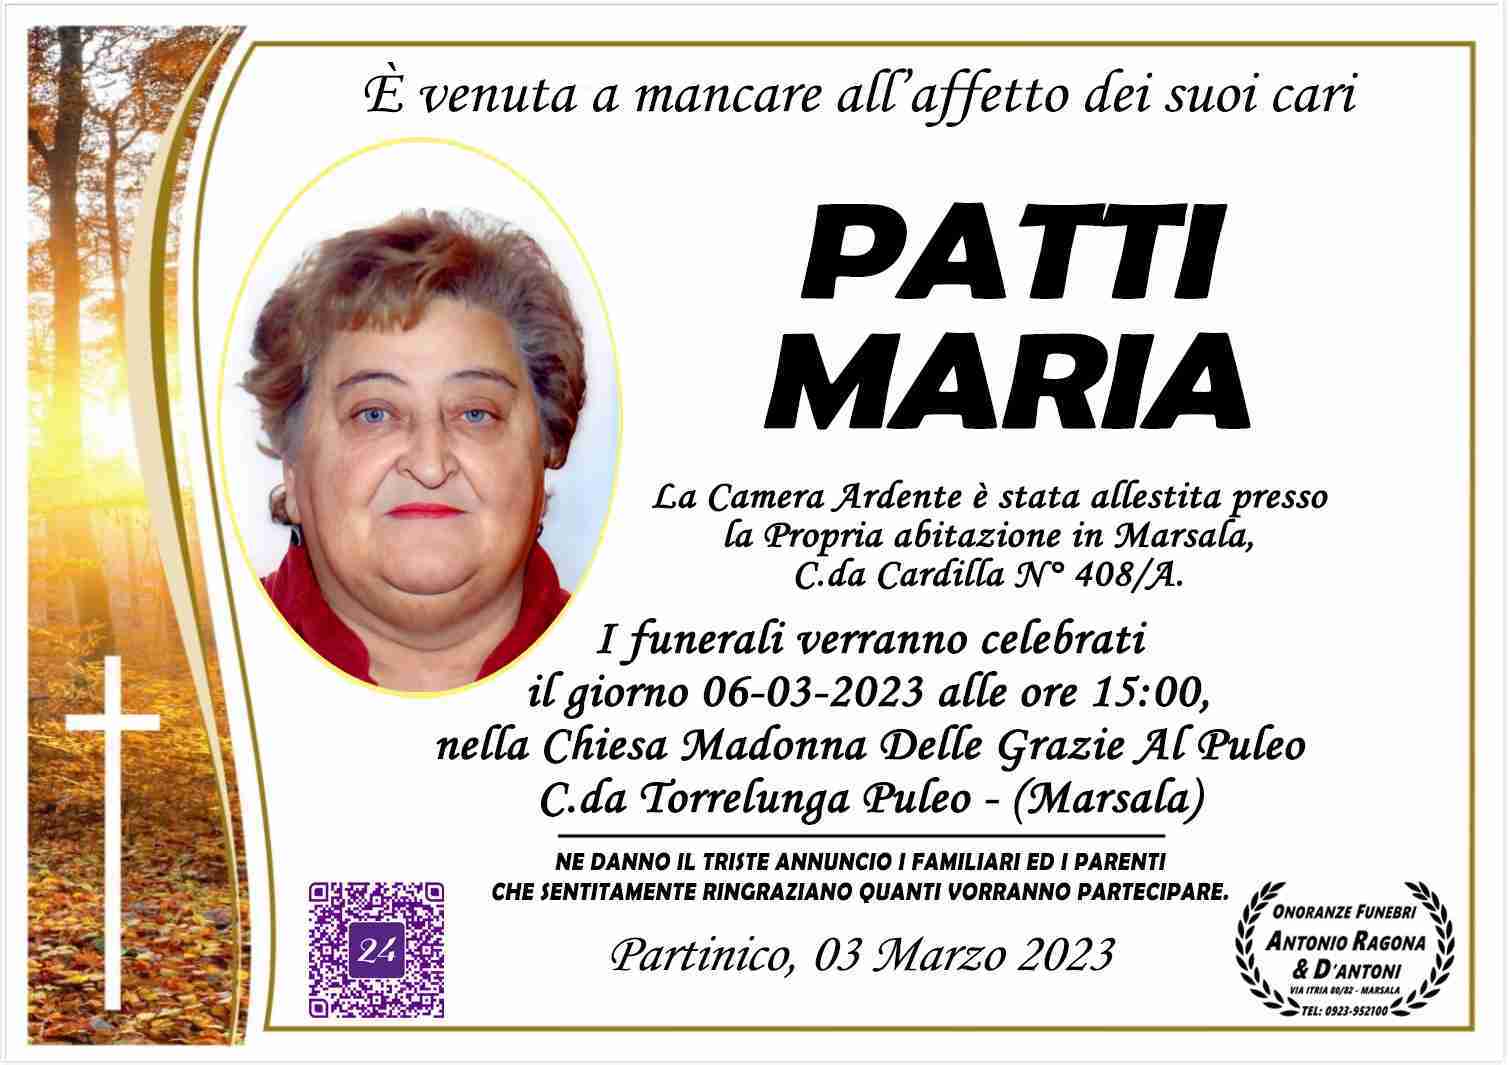 Maria Patti